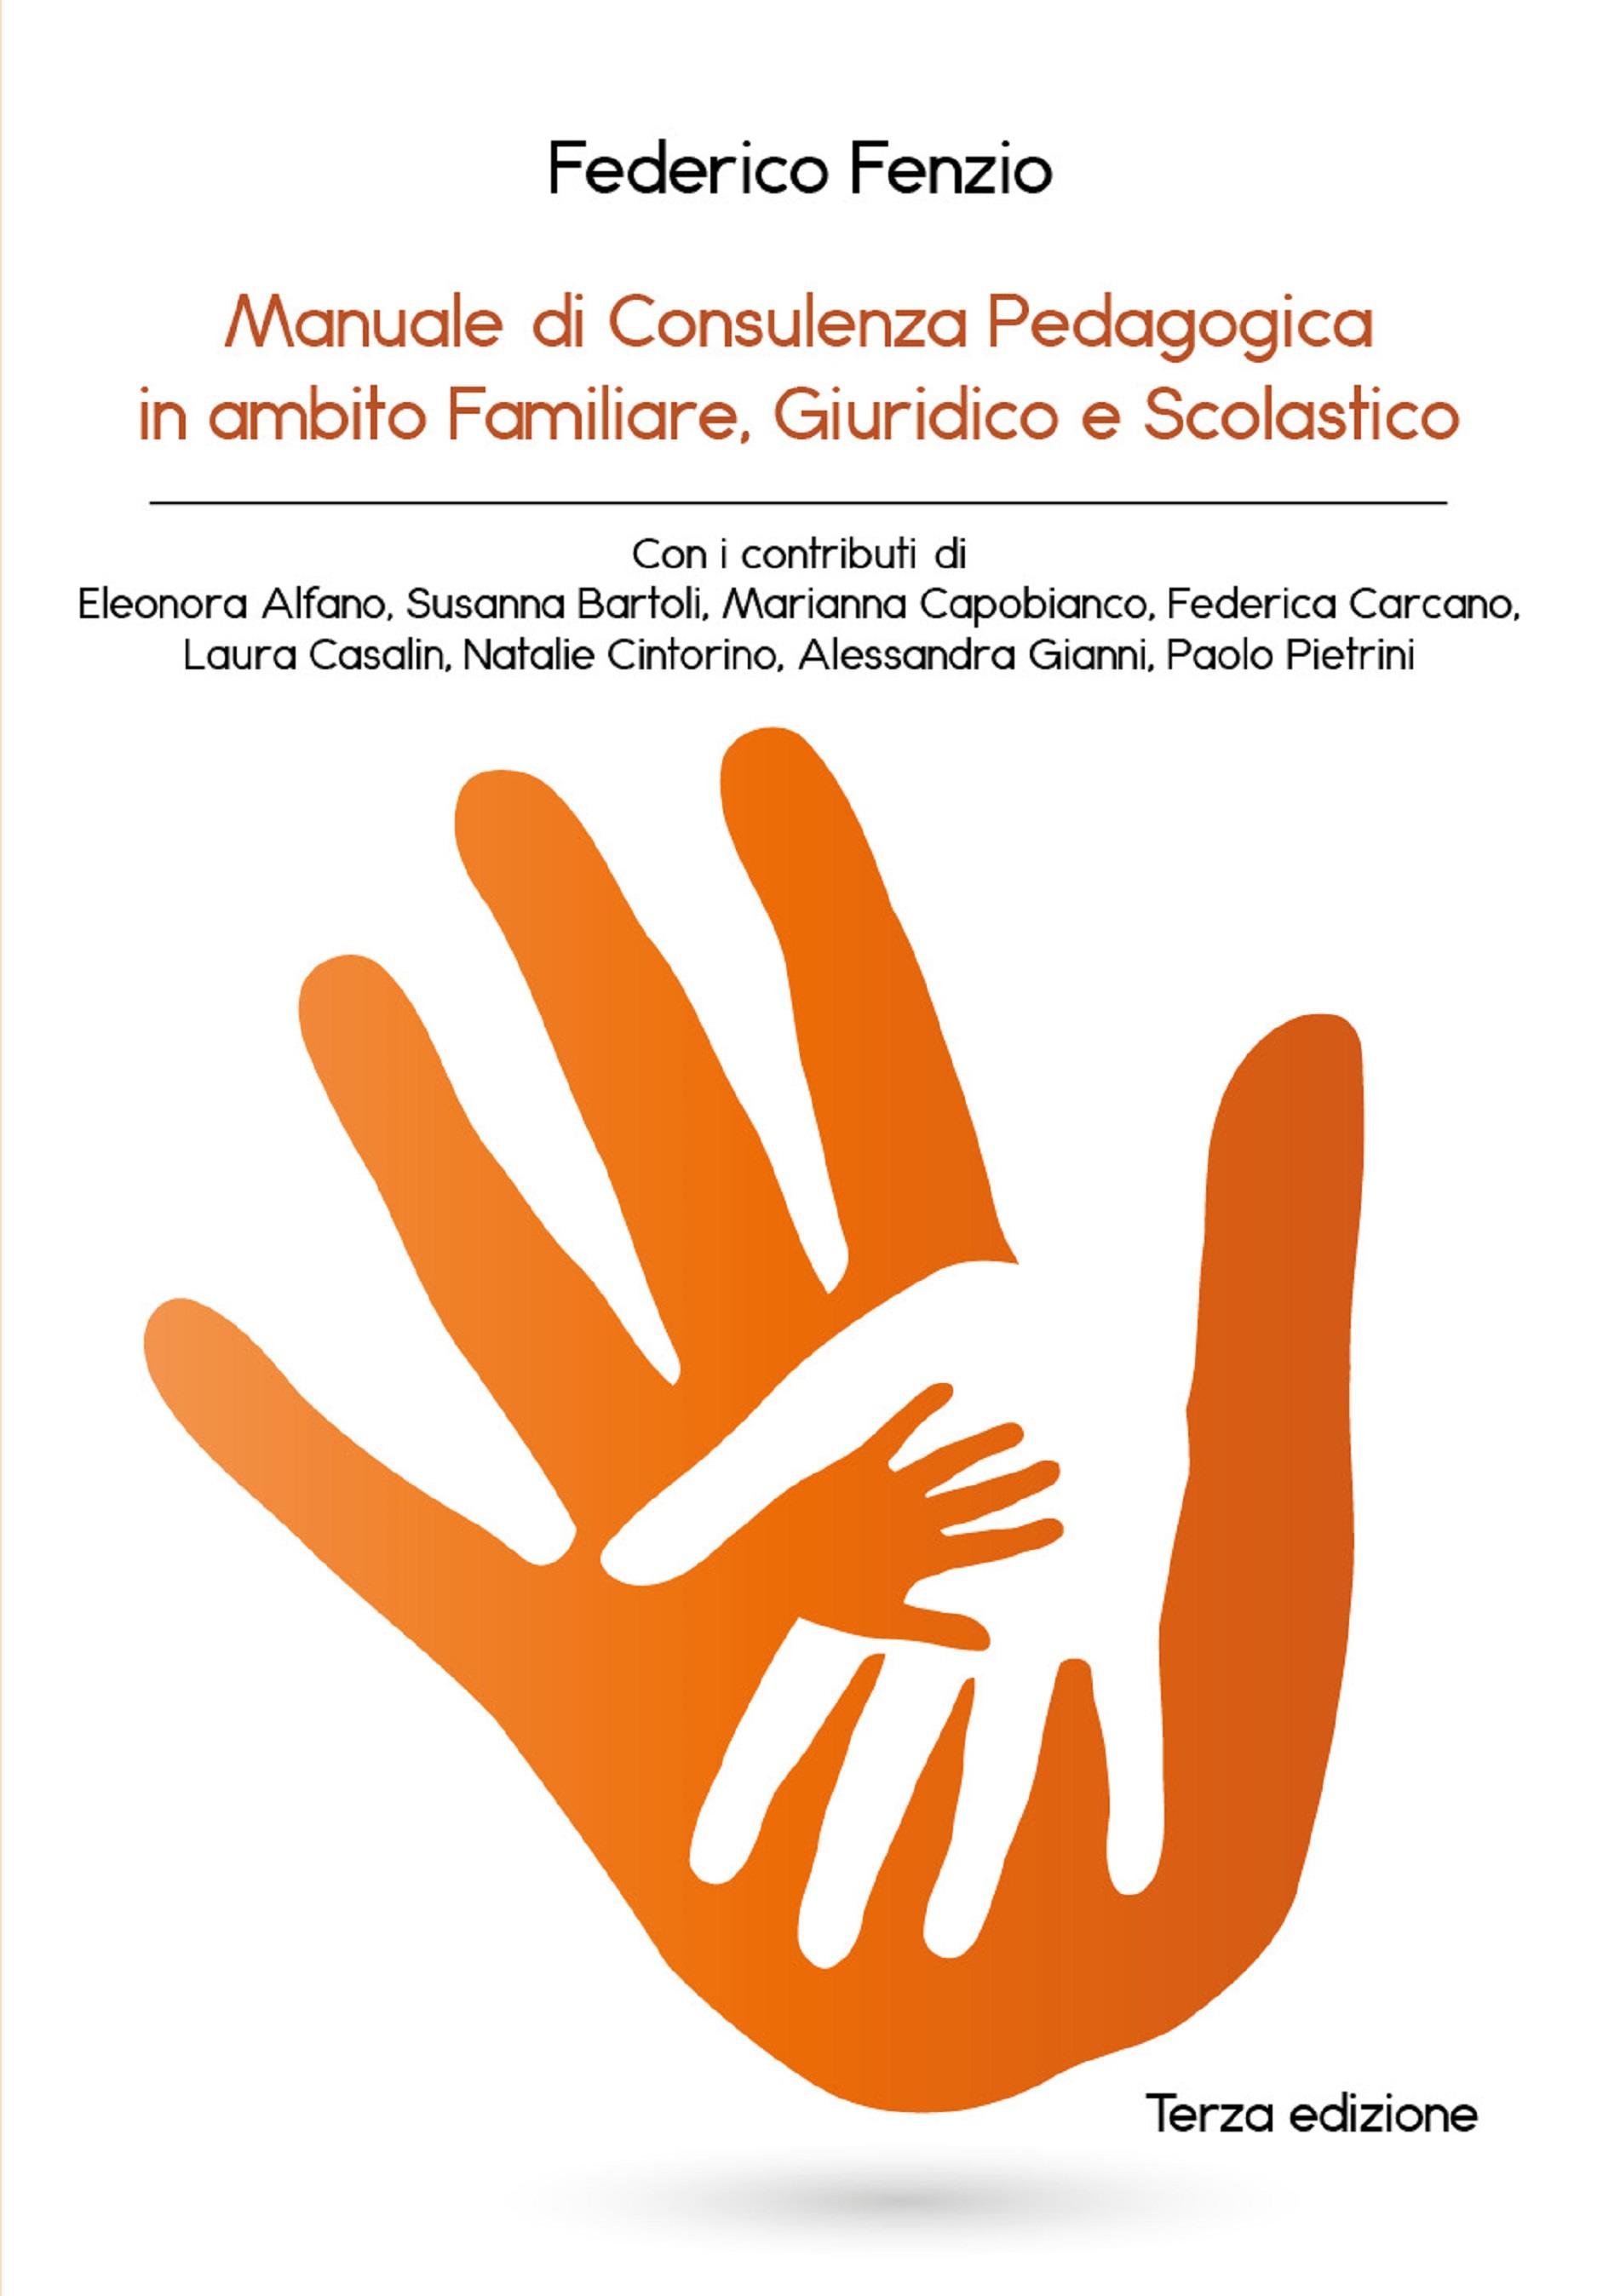 Manuale di Consulenza Pedagogica in ambito Familiare, Giuridico e Scolastico